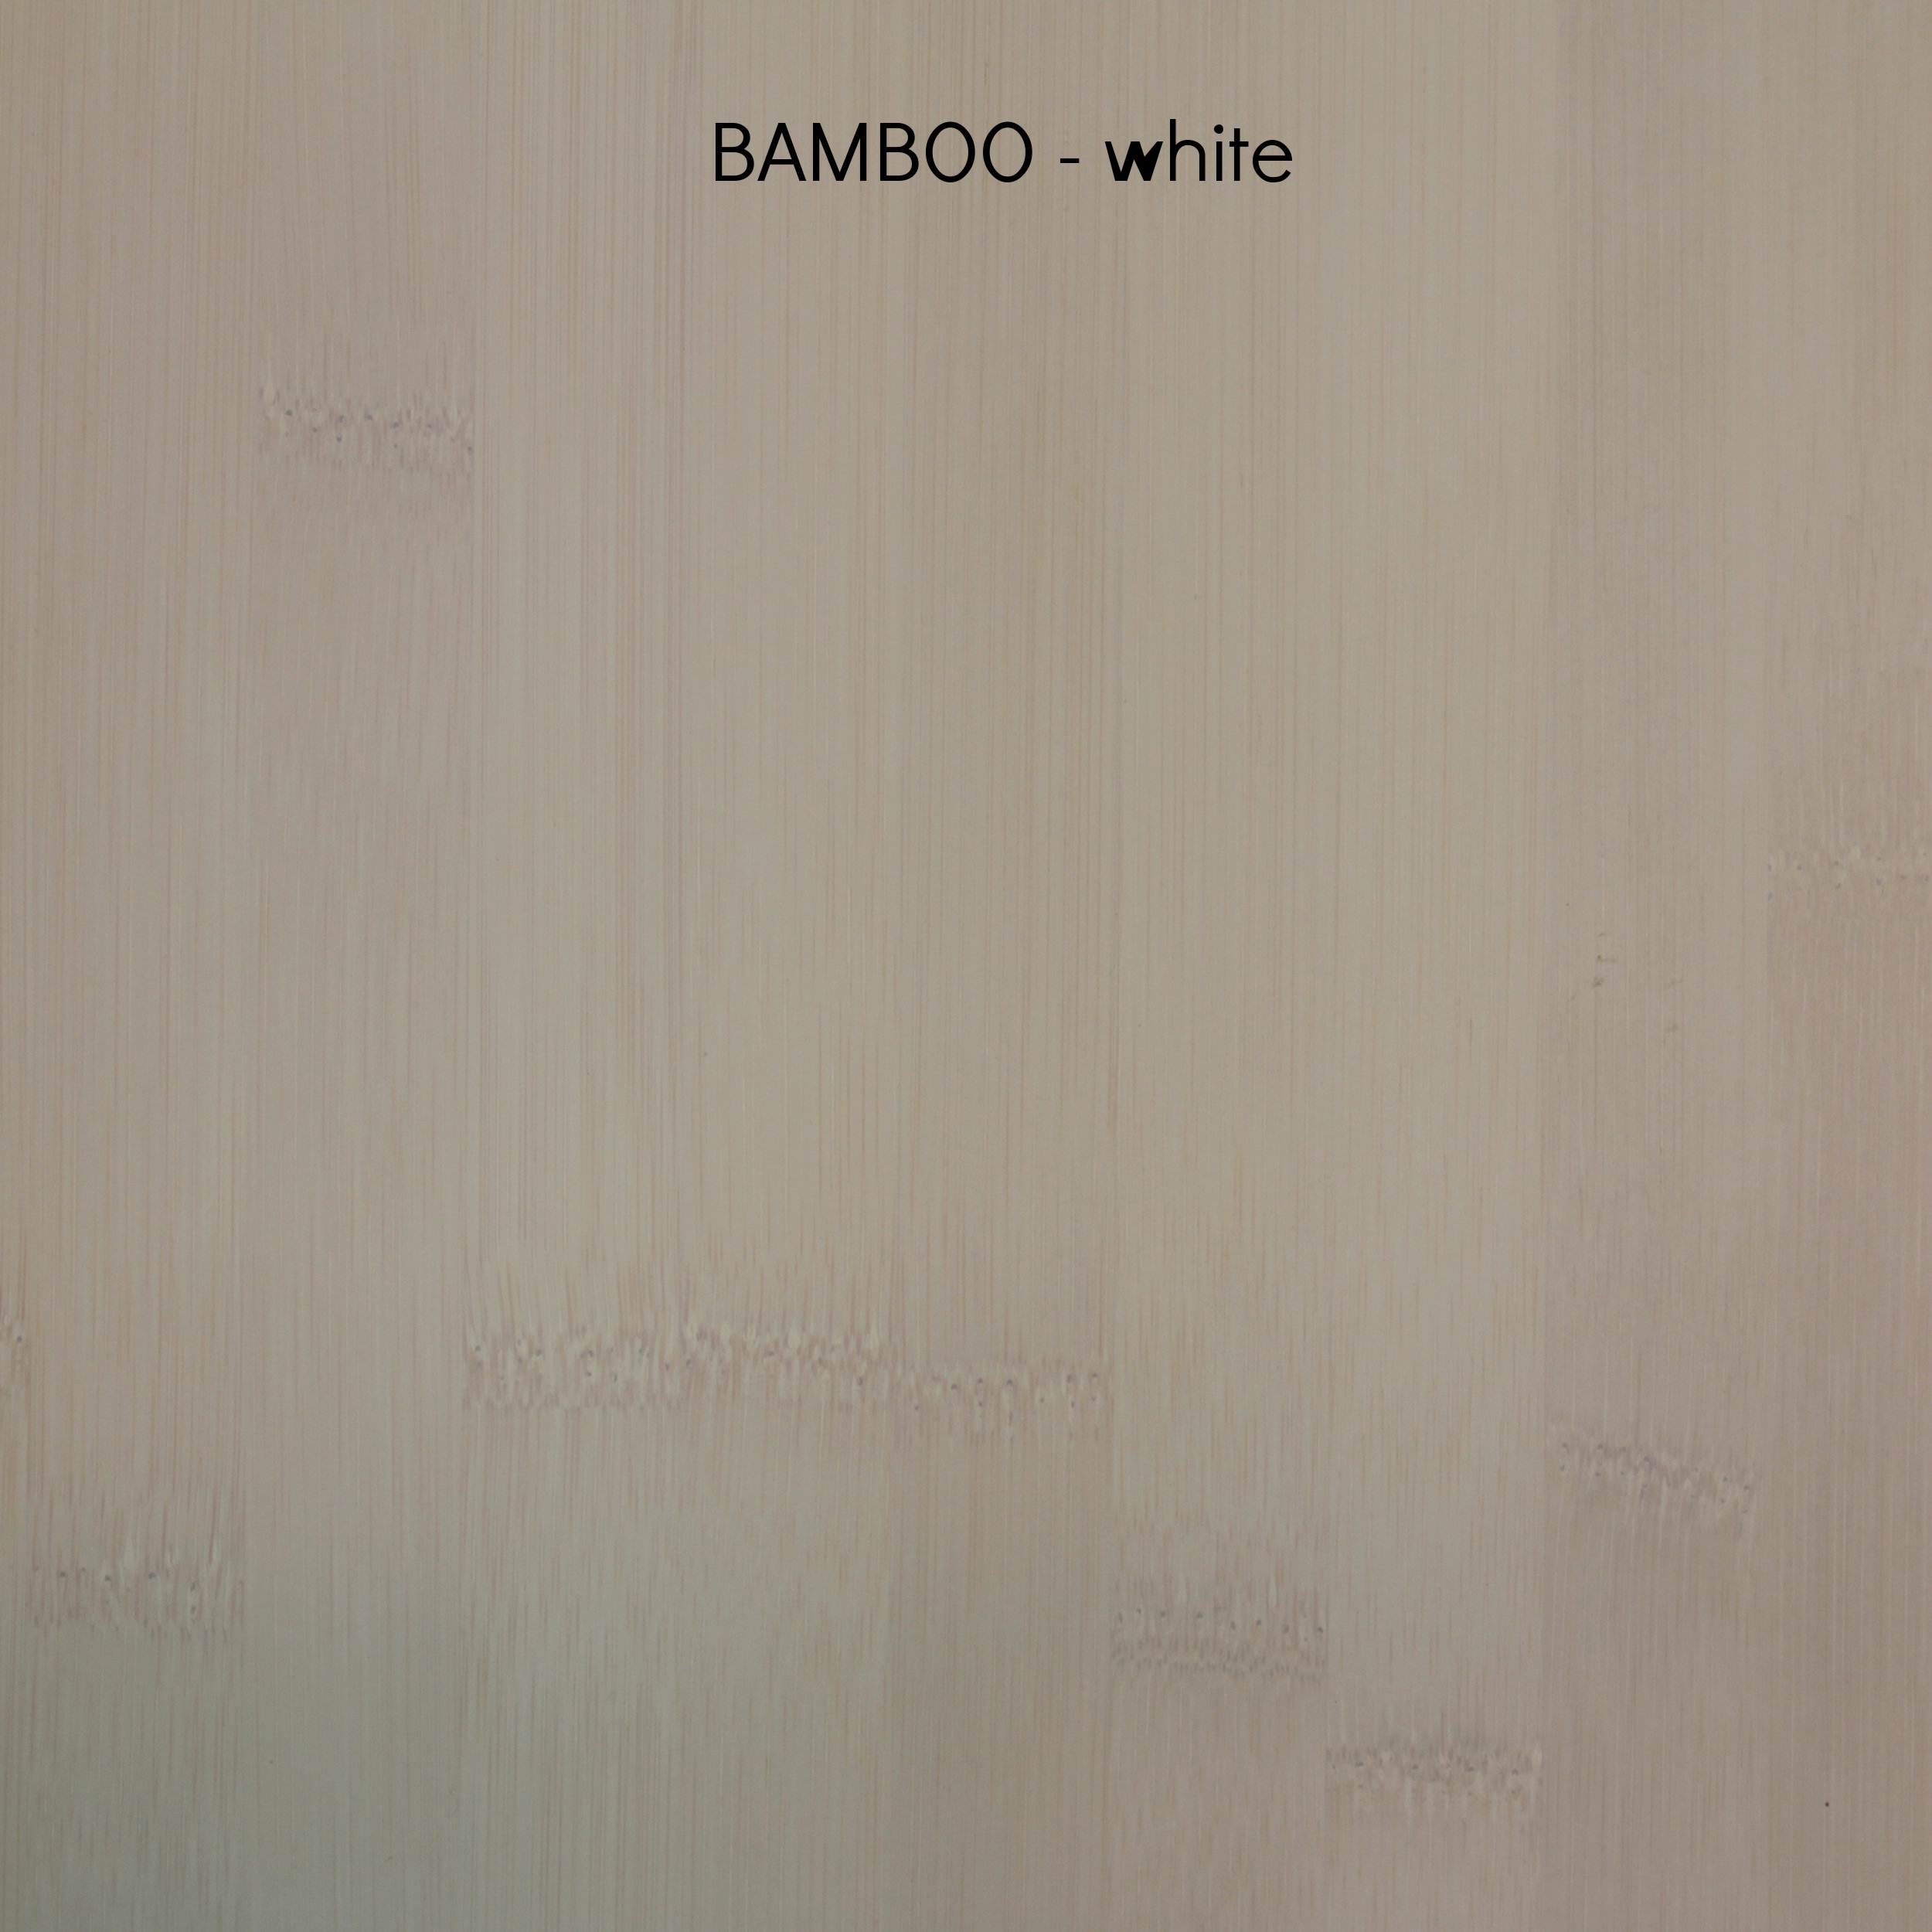 bamboowhite.jpg